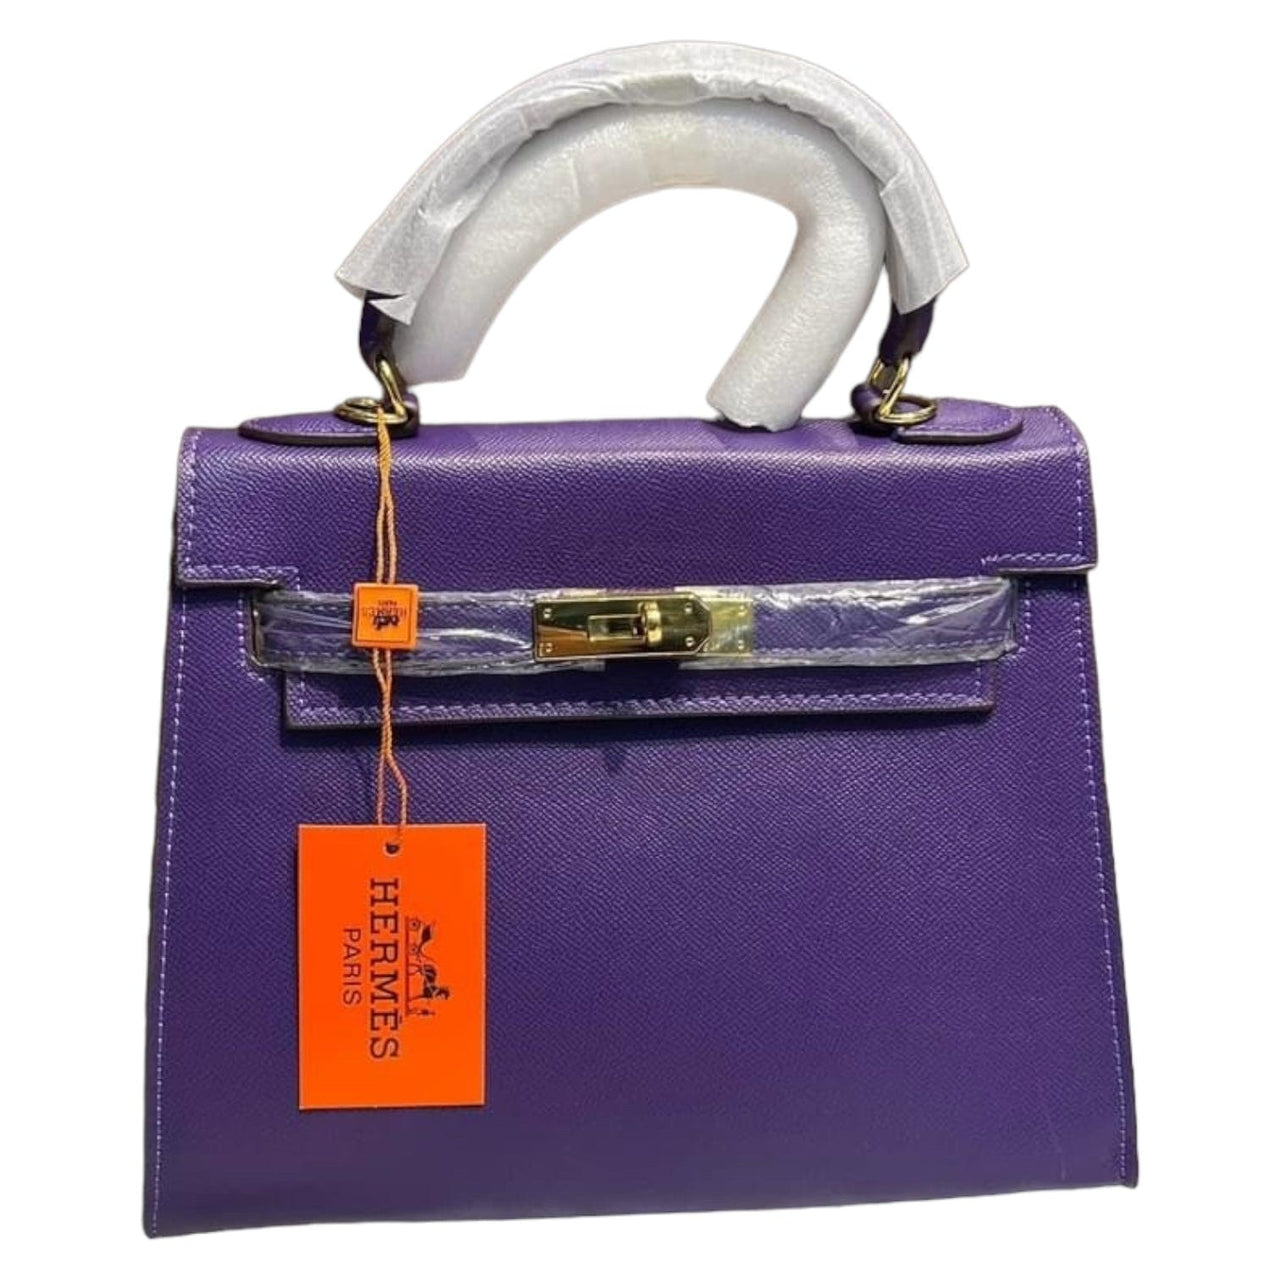 The Bag Couture Handbags, Wallets & Cases HERMĒS Togo Kelly Retourne 28 Shoulder / Crossbody Bag Violet